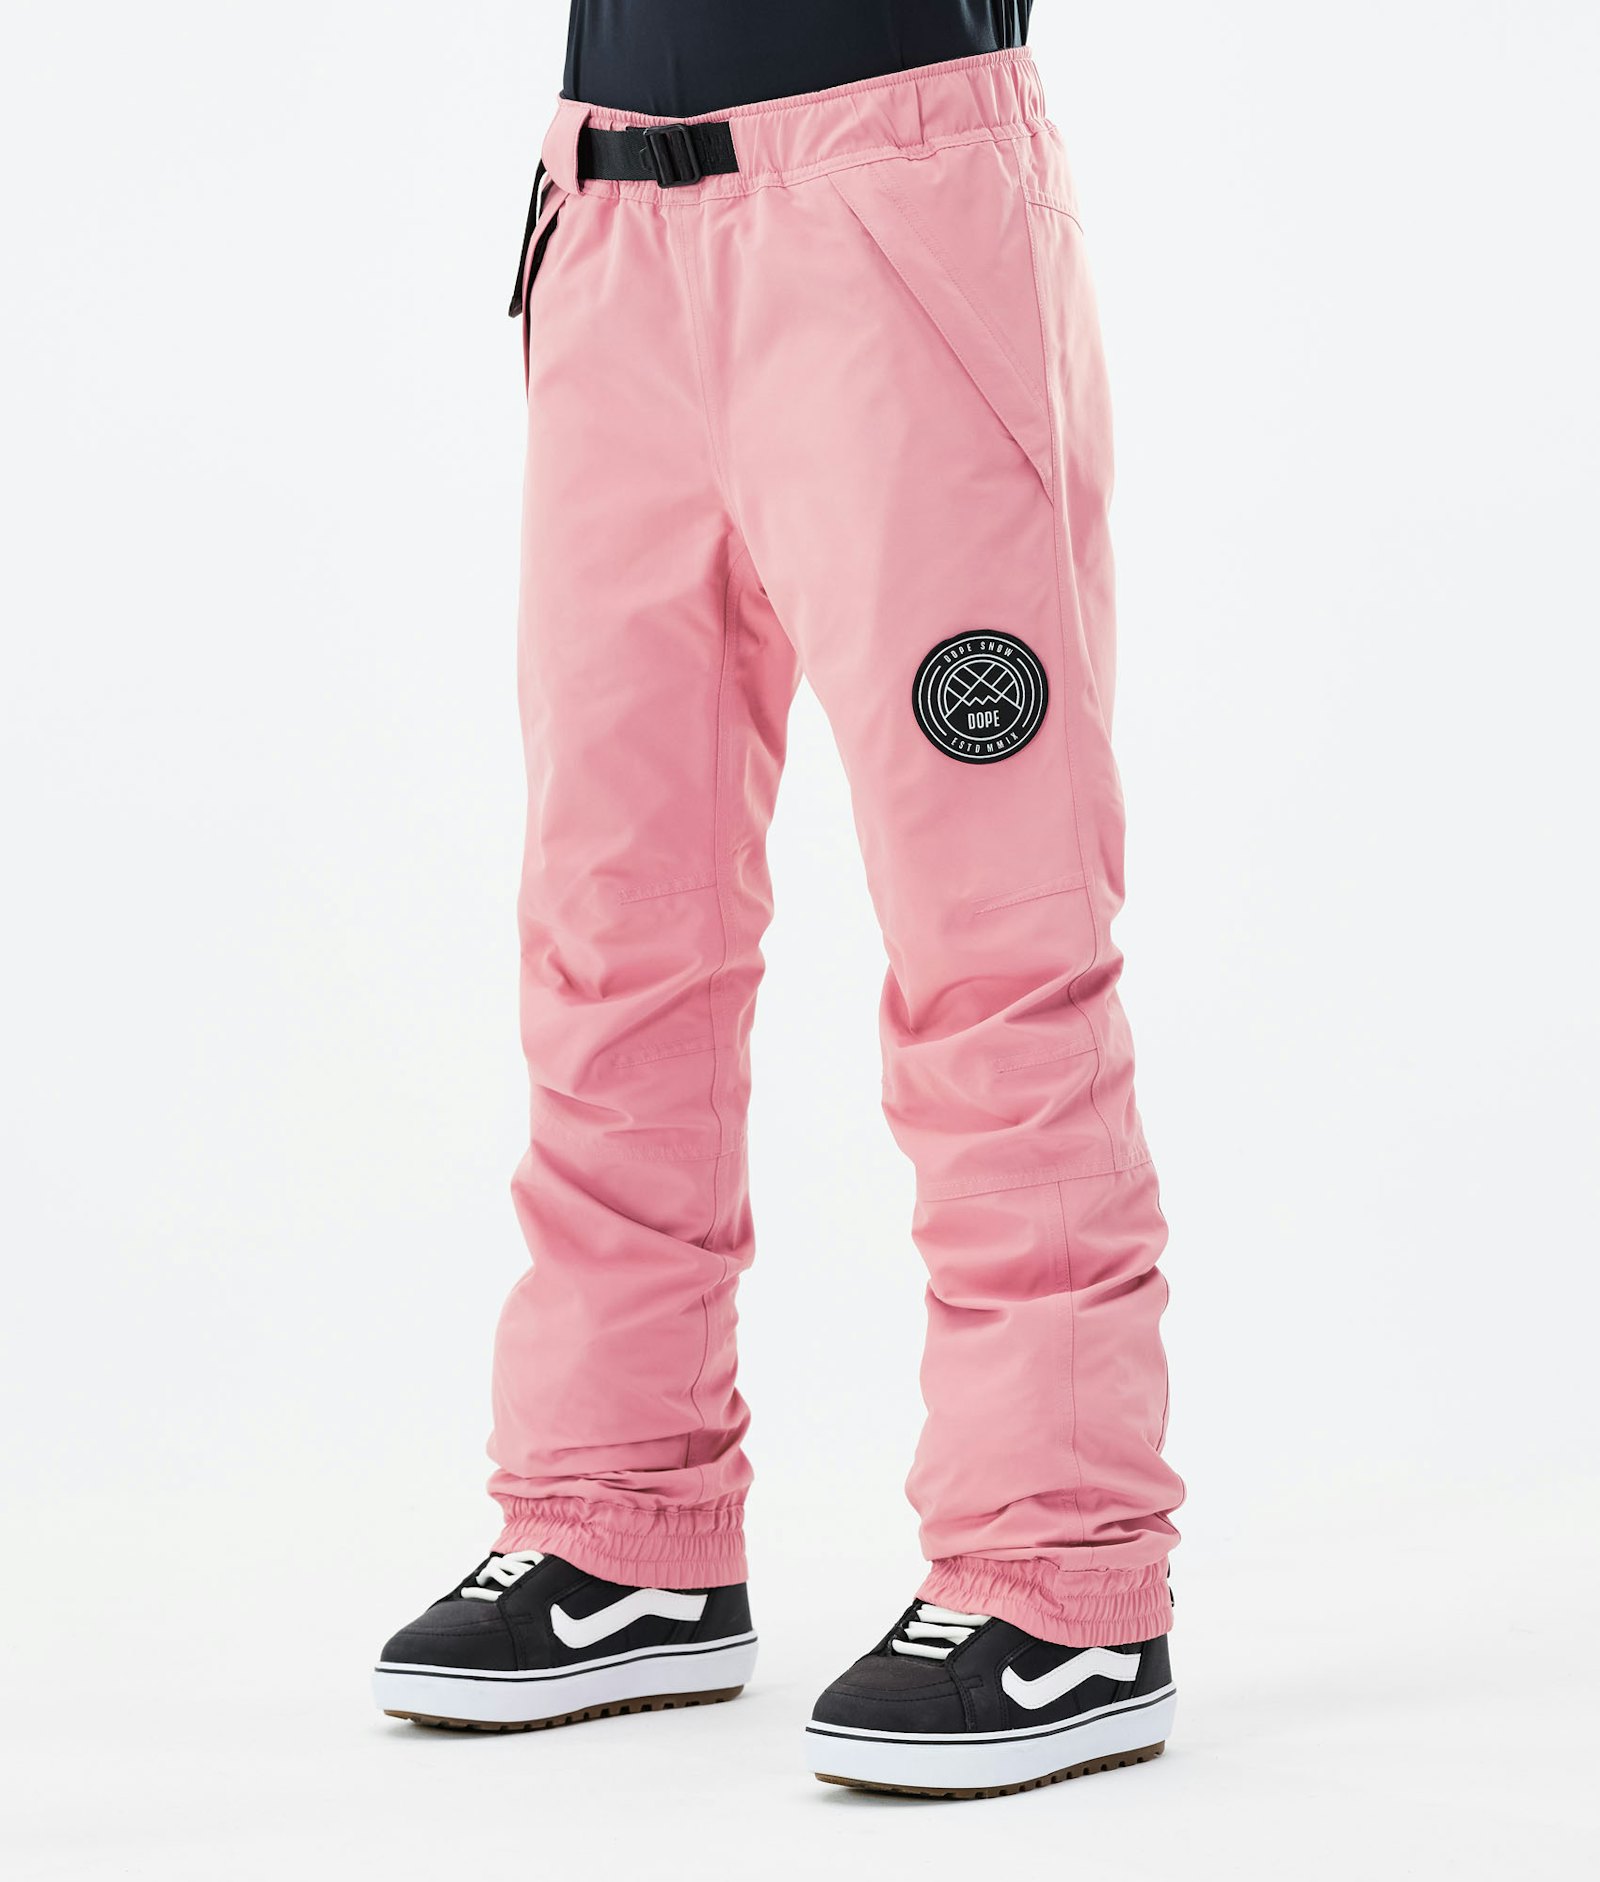 Blizzard W 2021 Kalhoty na Snowboard Dámské Pink